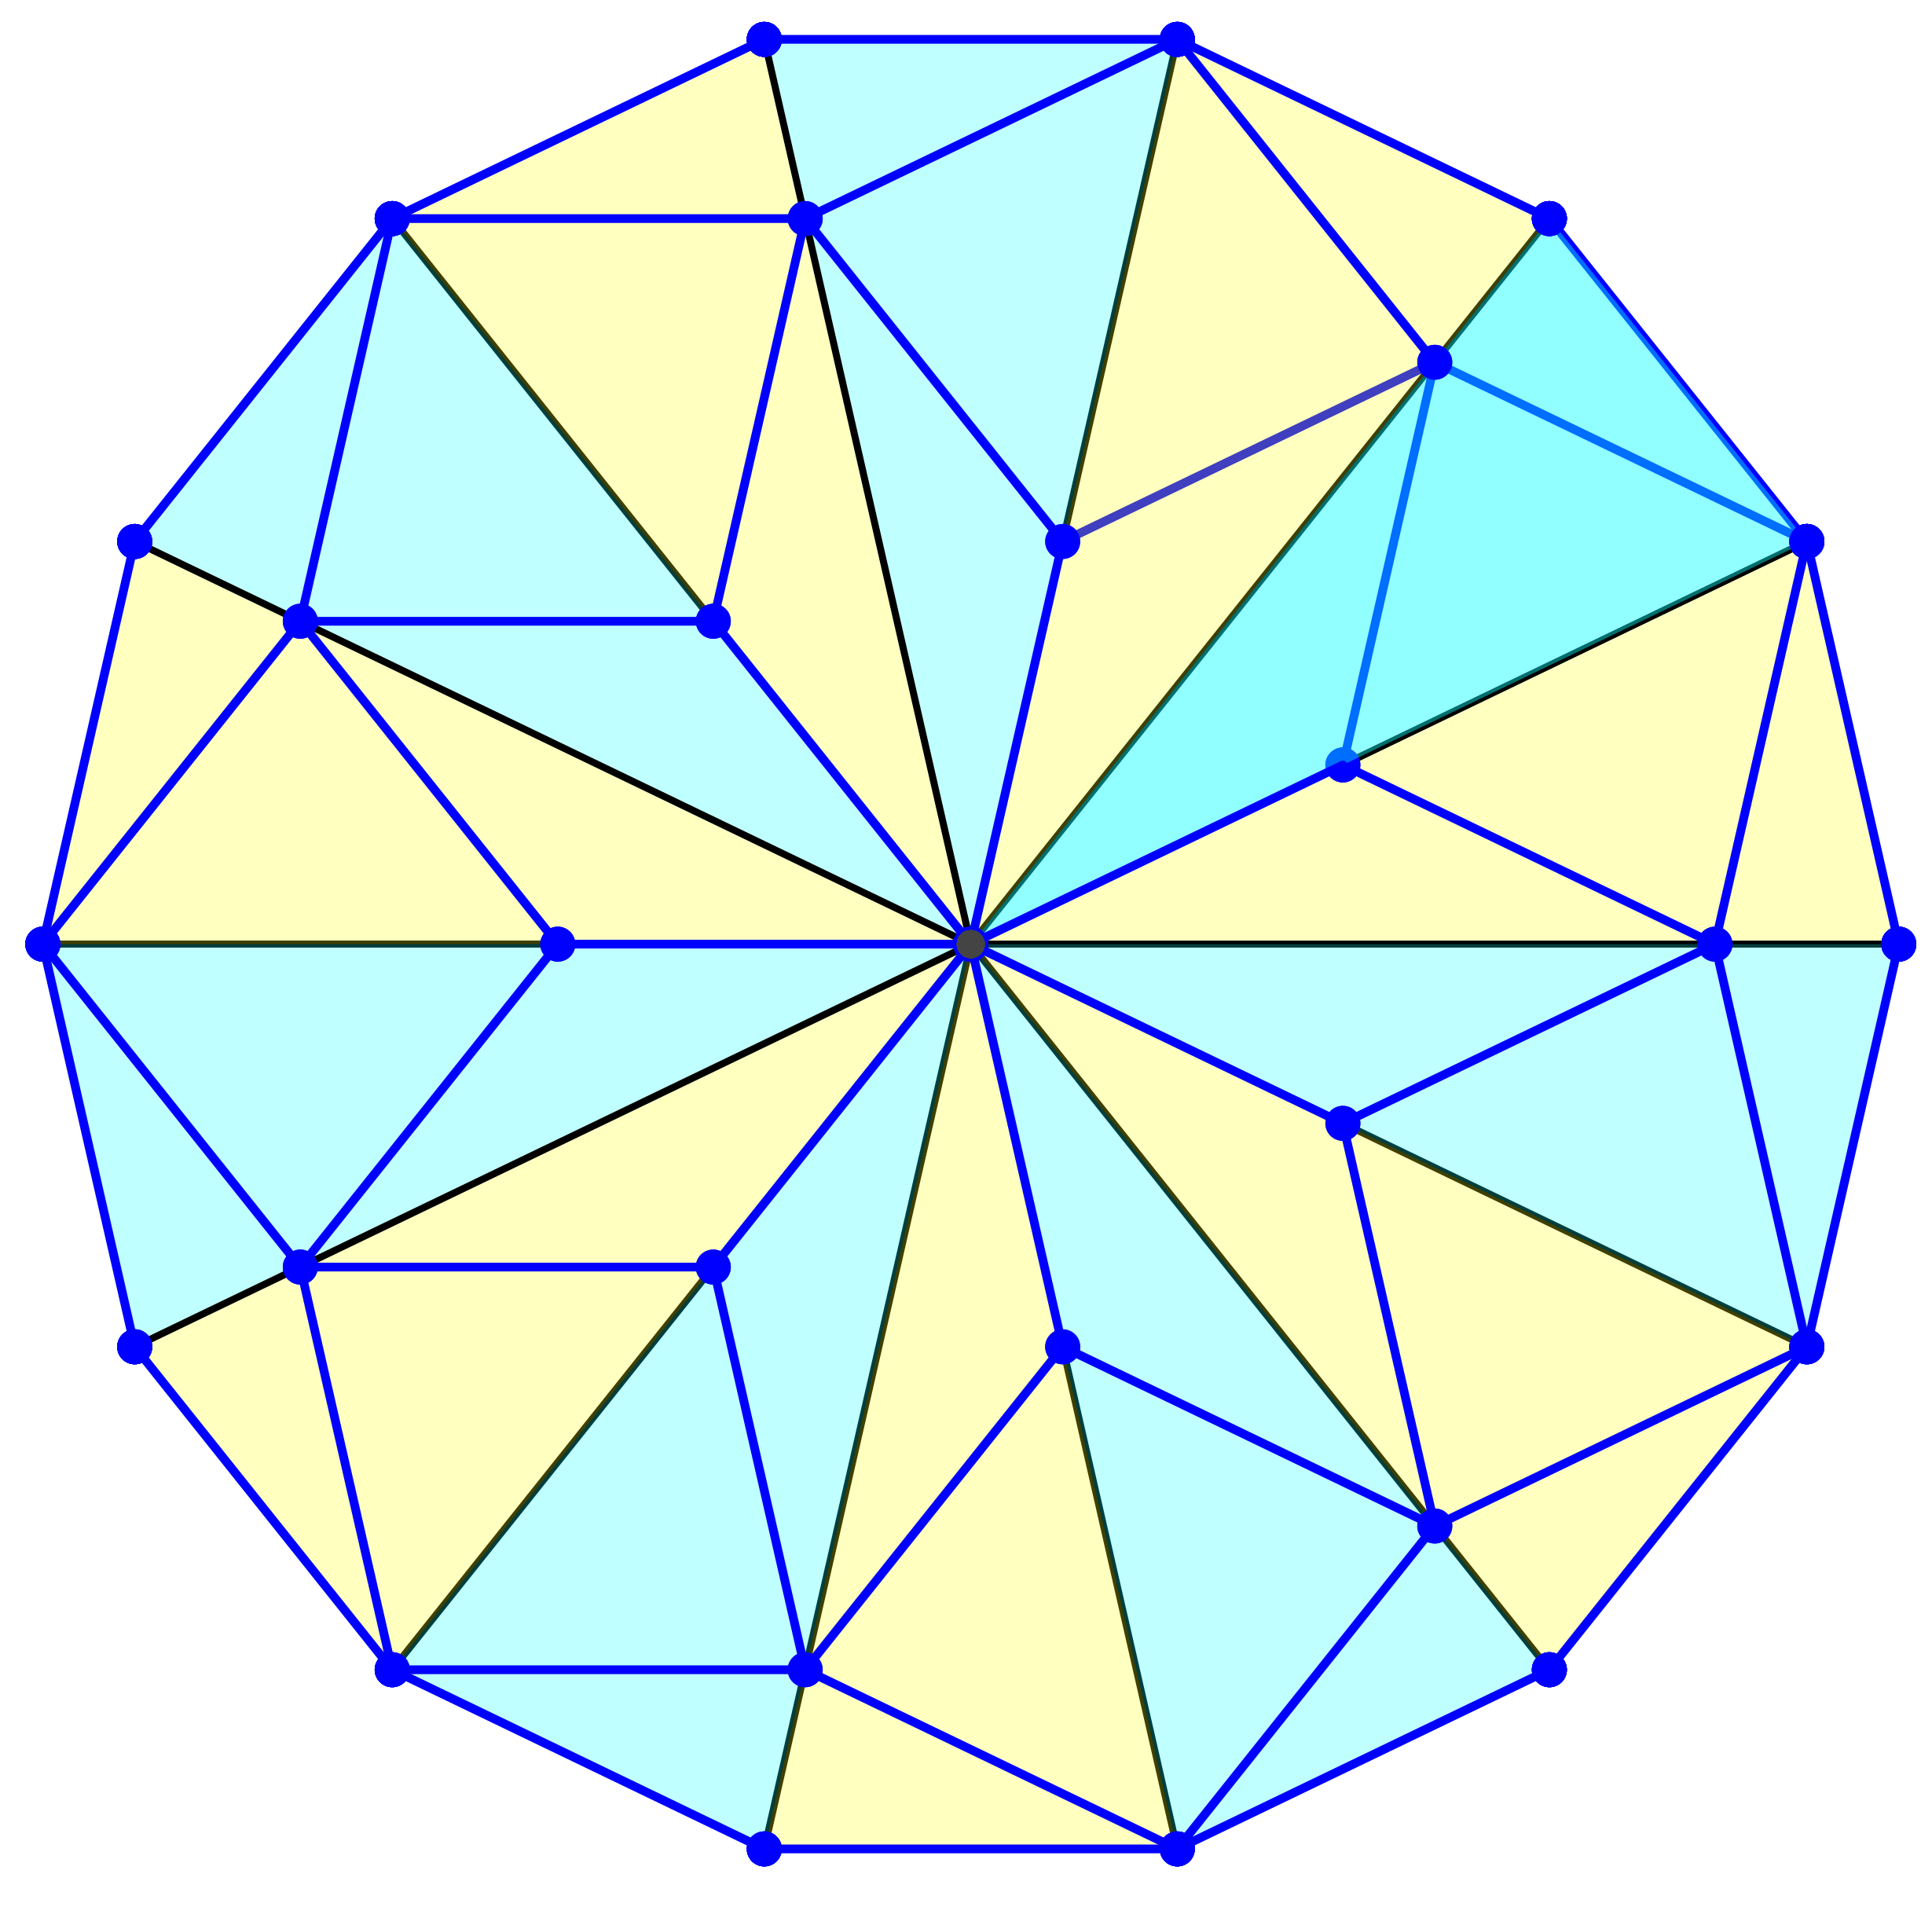 Ein Bild, das Symmetrie, Kunst, Farbigkeit, Origami enthält.

Automatisch generierte Beschreibung